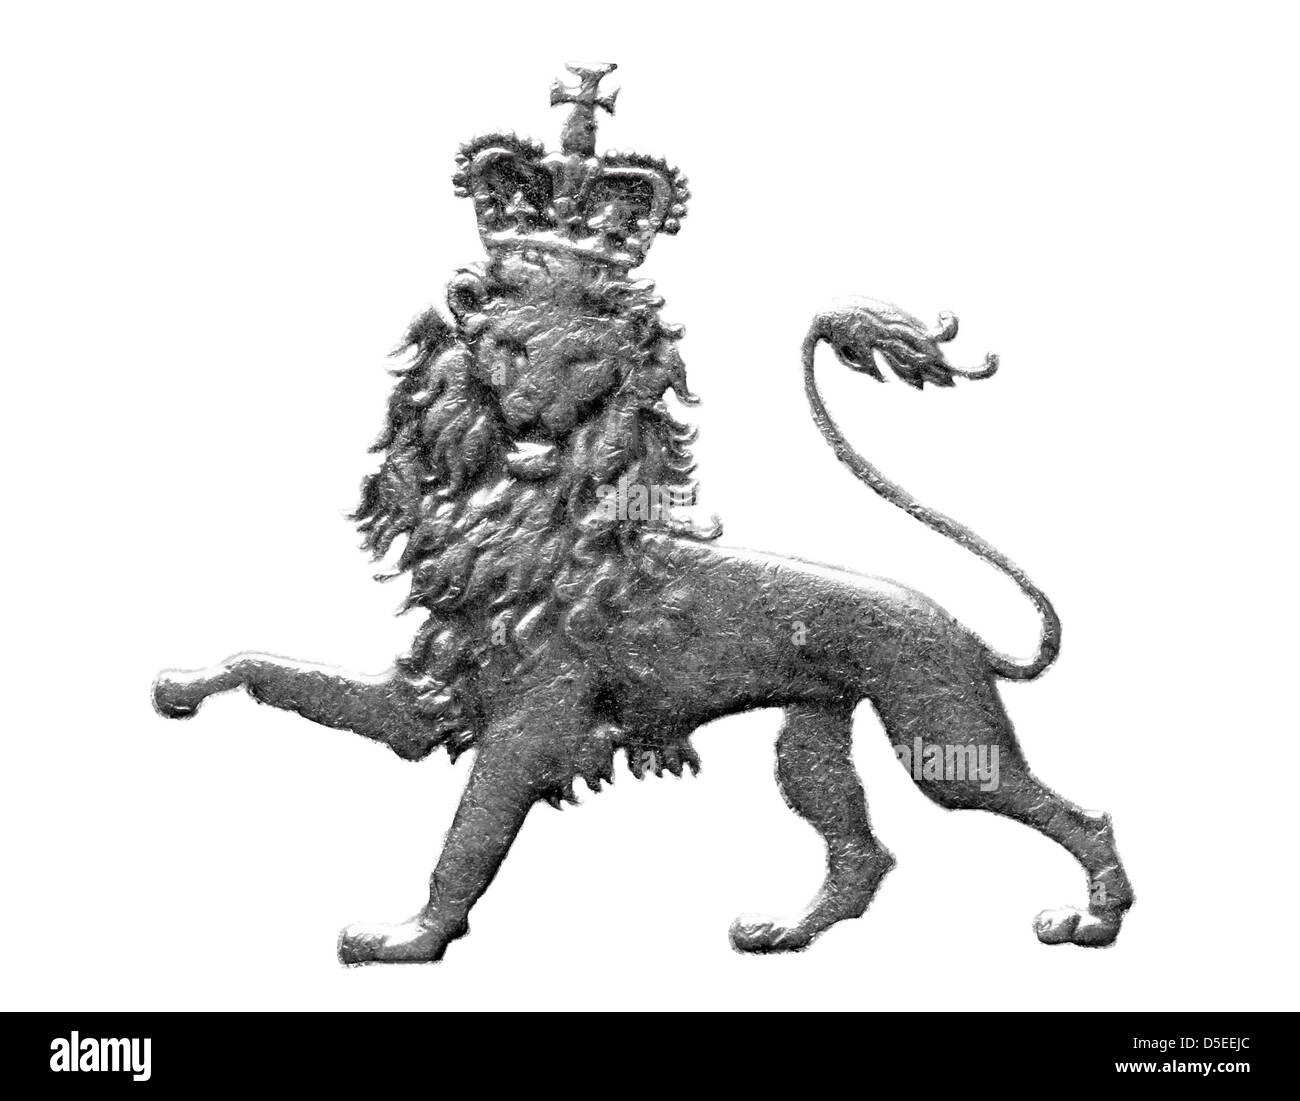 Incoronato lion da 10 pence coin, UK, 2003, su sfondo bianco Foto Stock